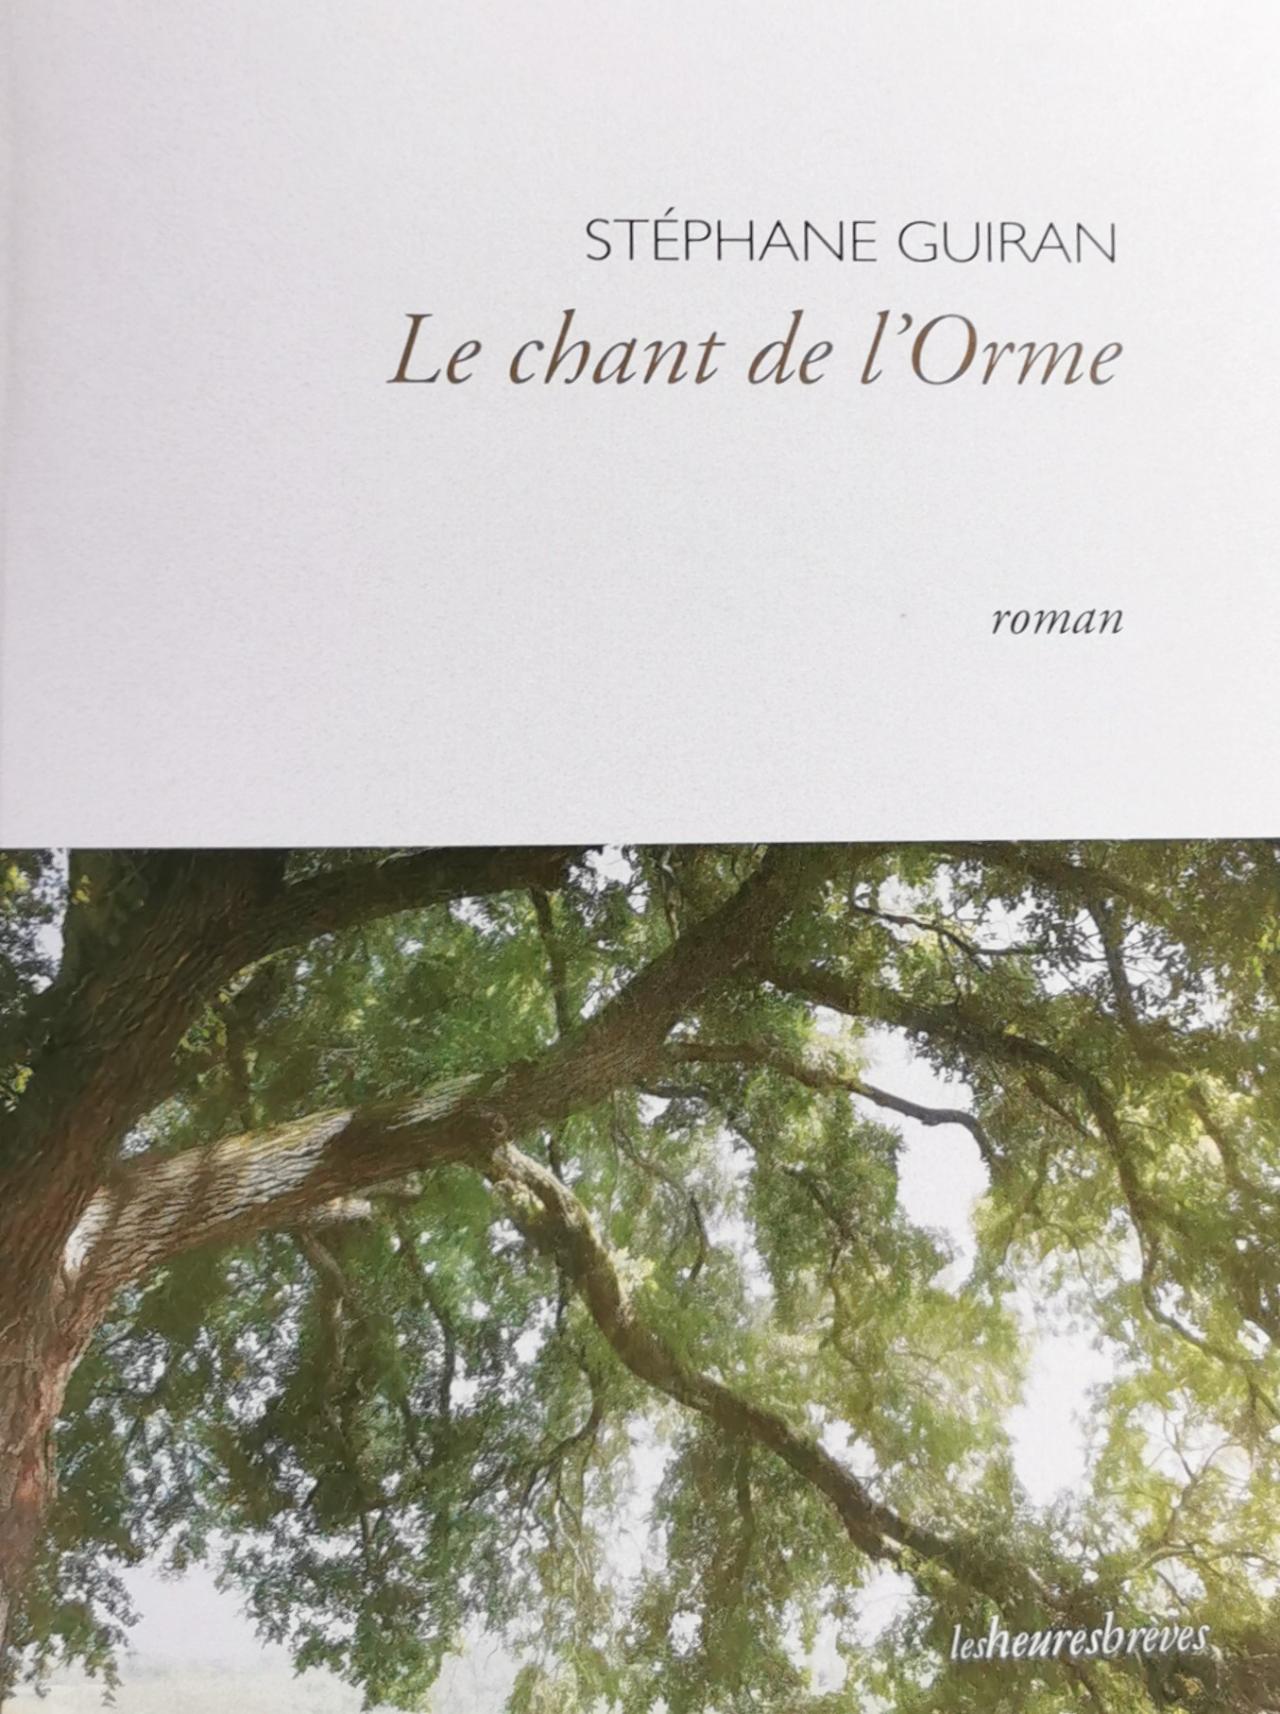 Stéphane Guiran Le chant de l'Orme Domaine de Chaumont-sur-Loire Art contemporain